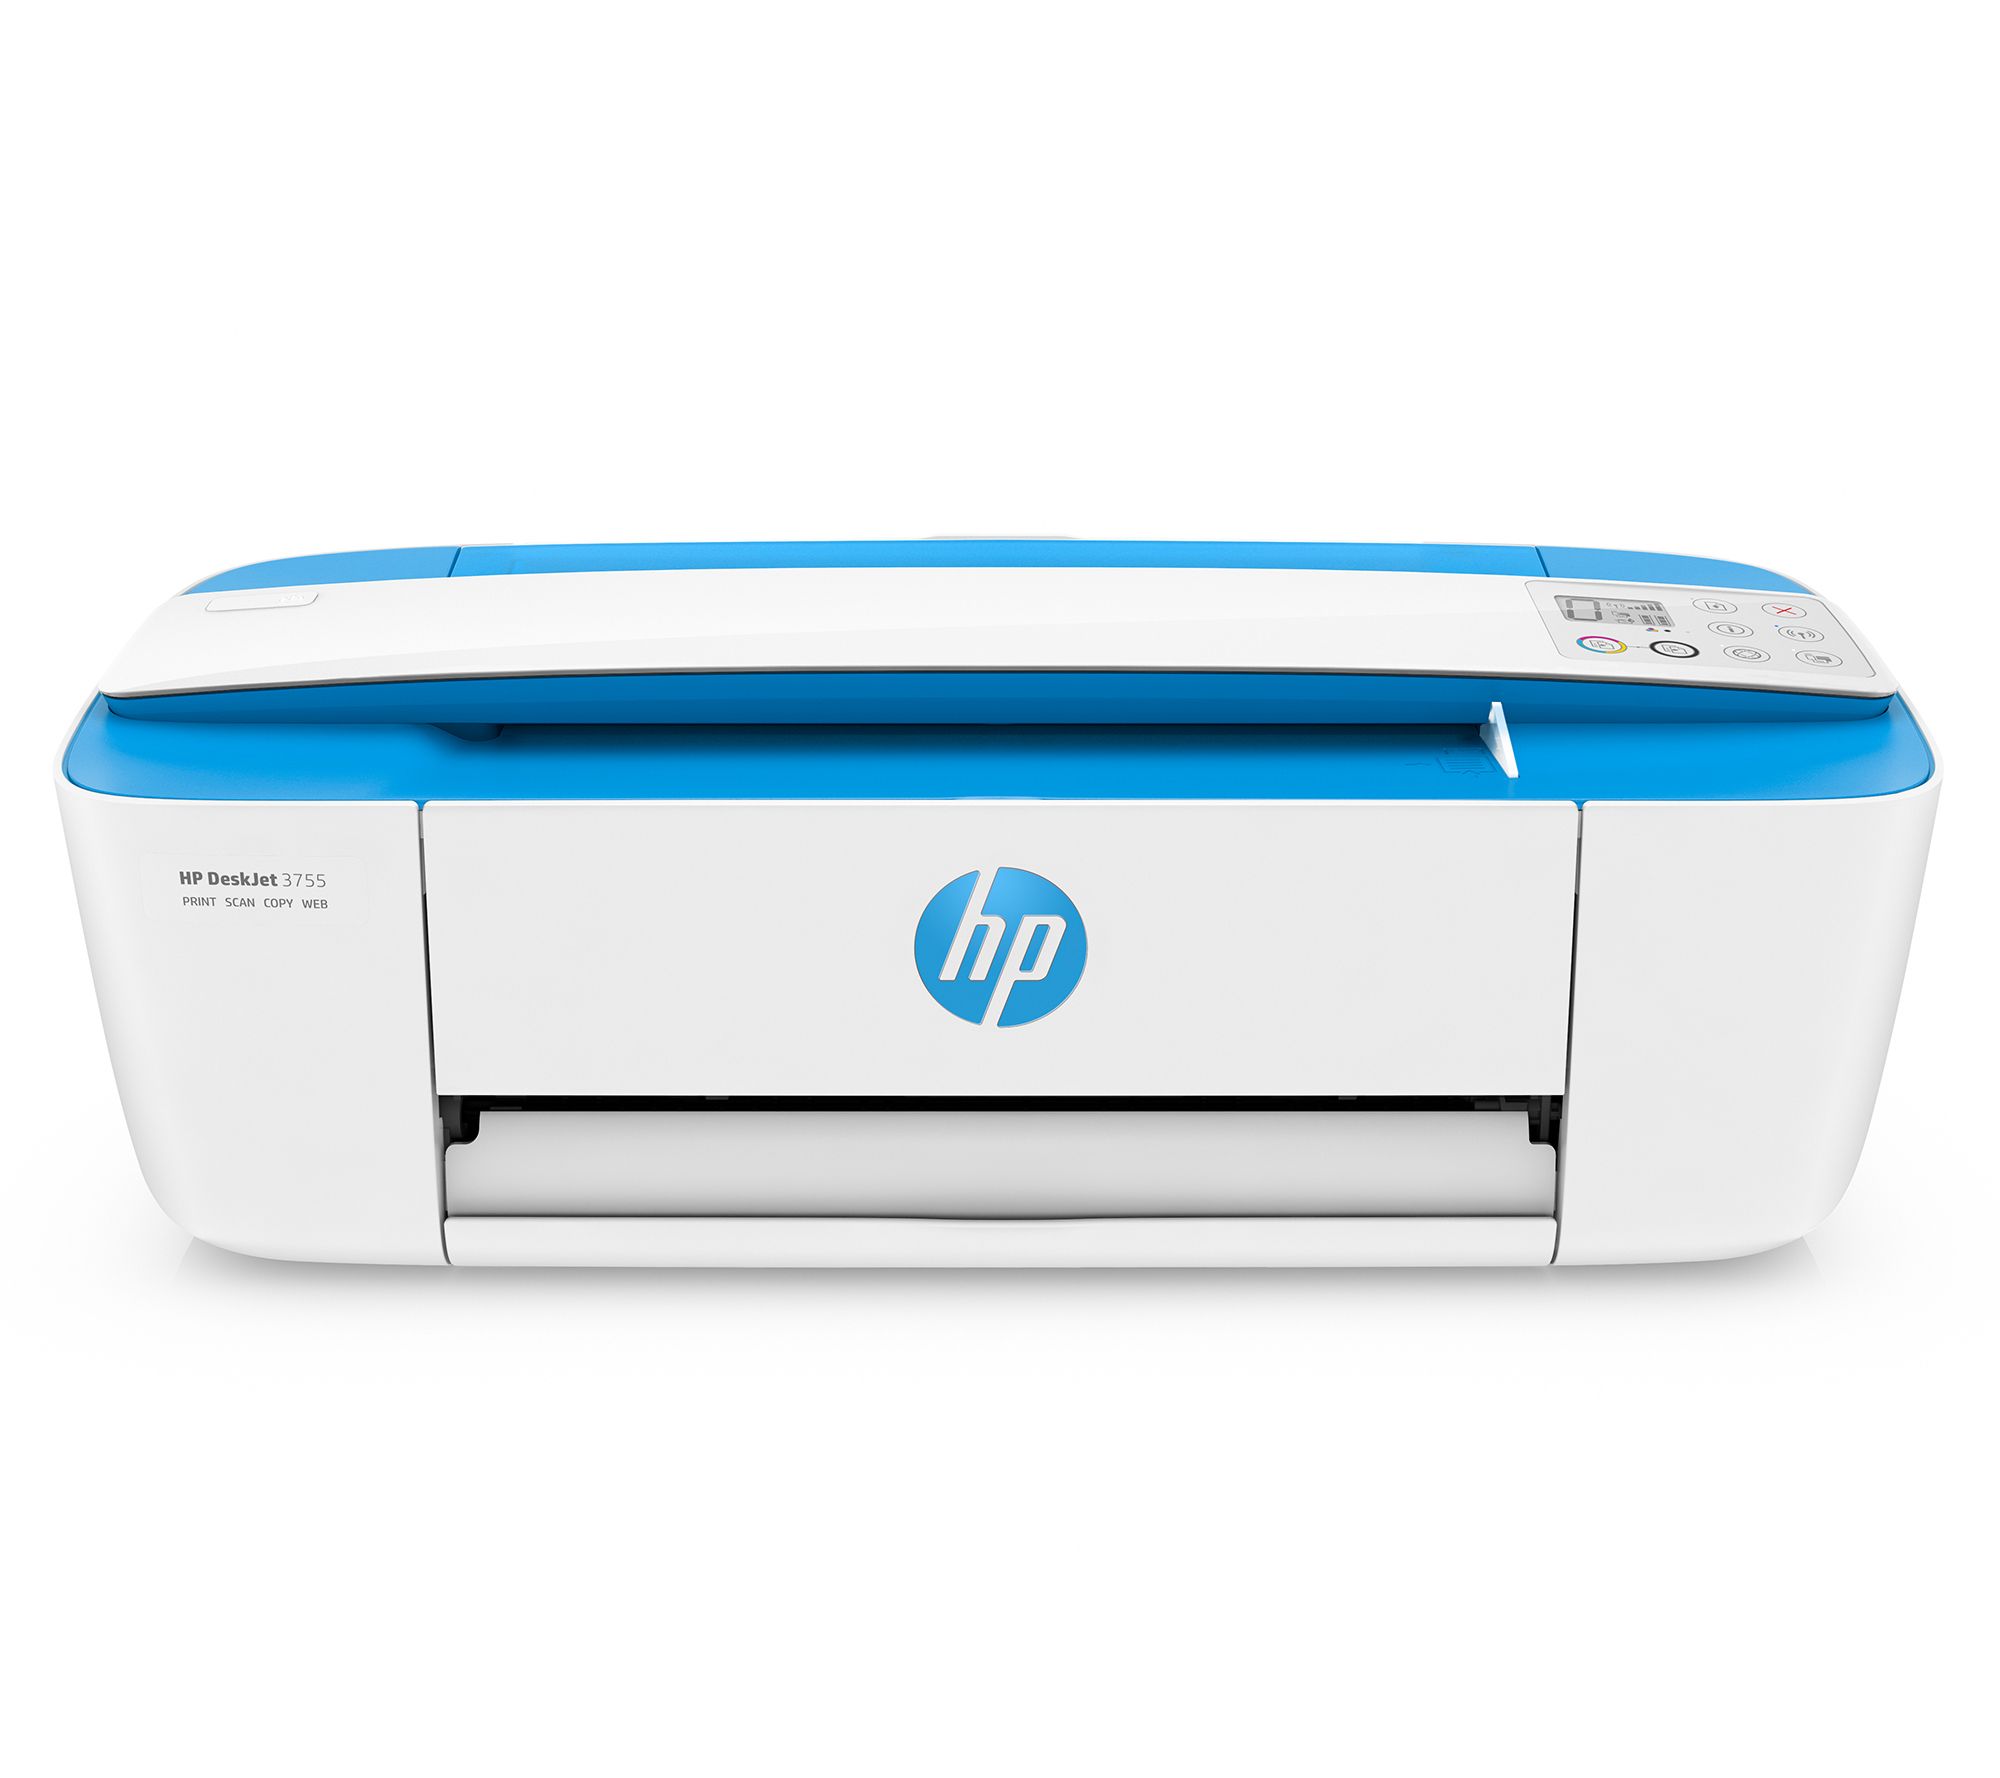 Kietelen eeuwig geeuwen HP DeskJet 3755 Wireless All-in-One Printer - QVC.com